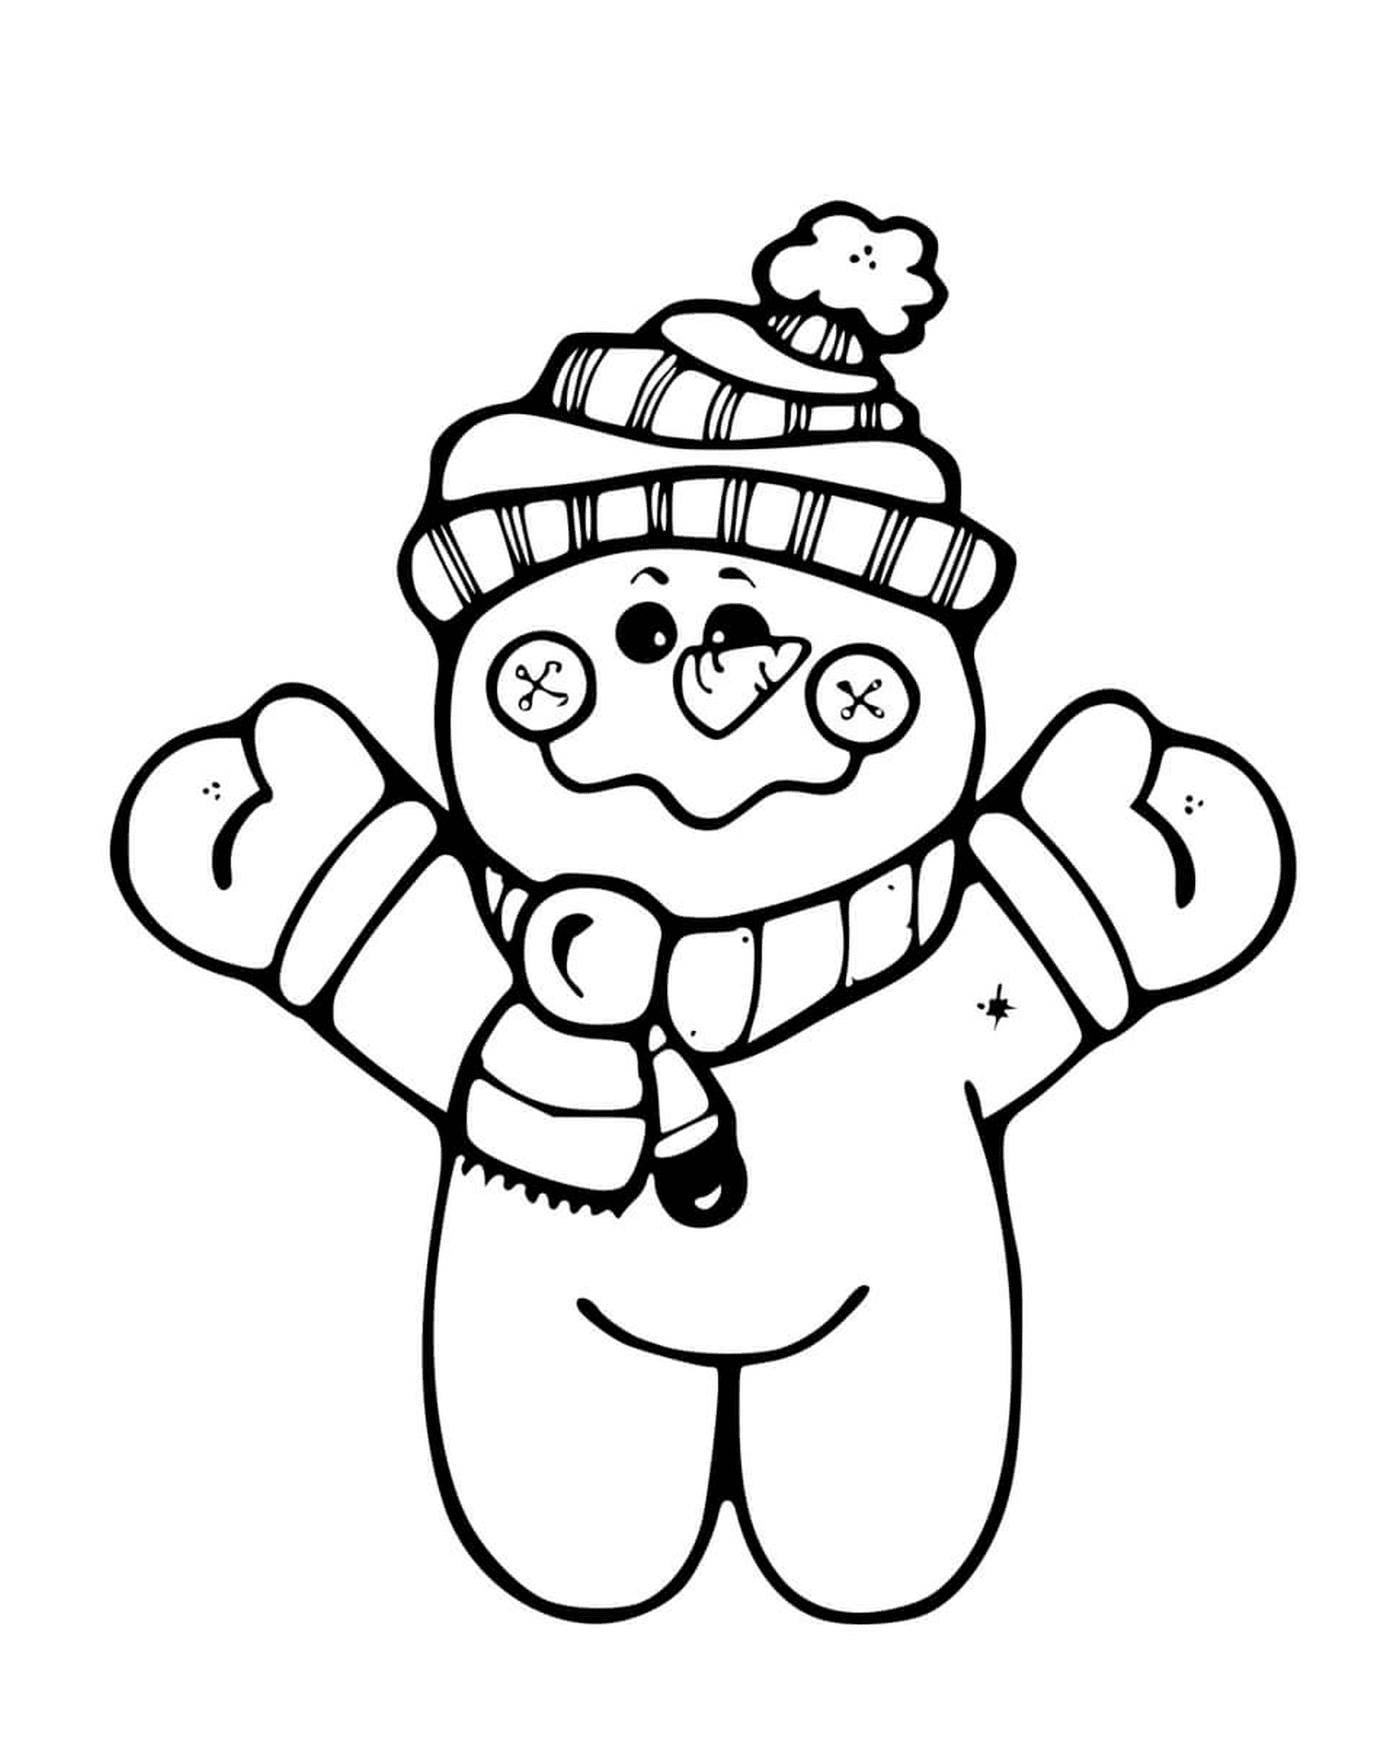  Kleiner Schneemann steht, trägt einen Tuque und einen Schal 